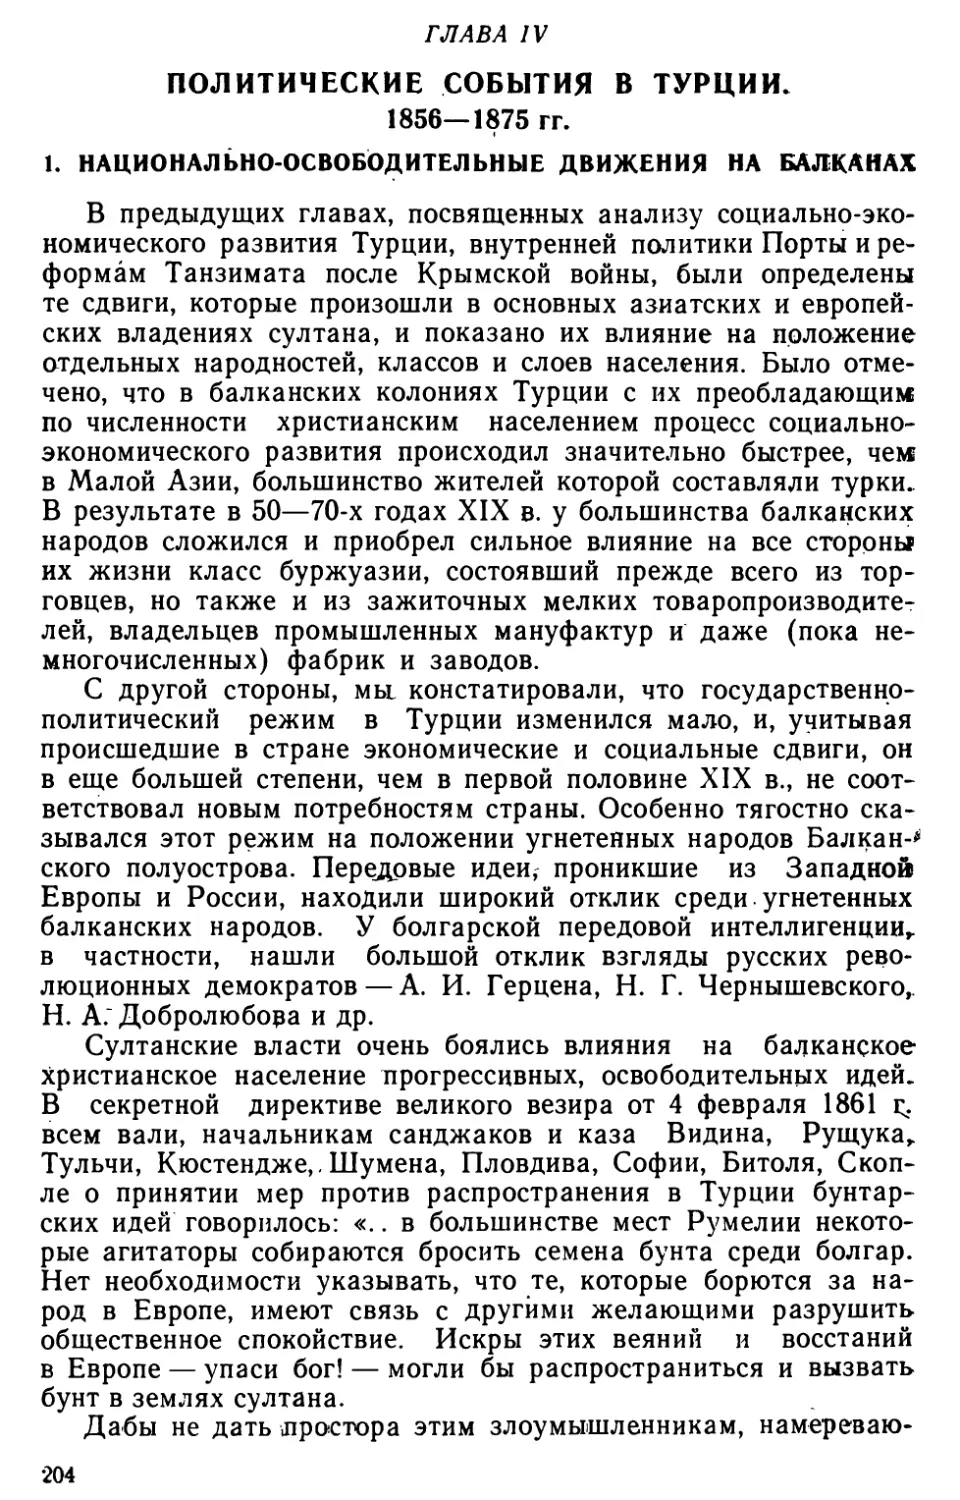 Глава IV. Политические события а Турции. 1856‒1875 гг.